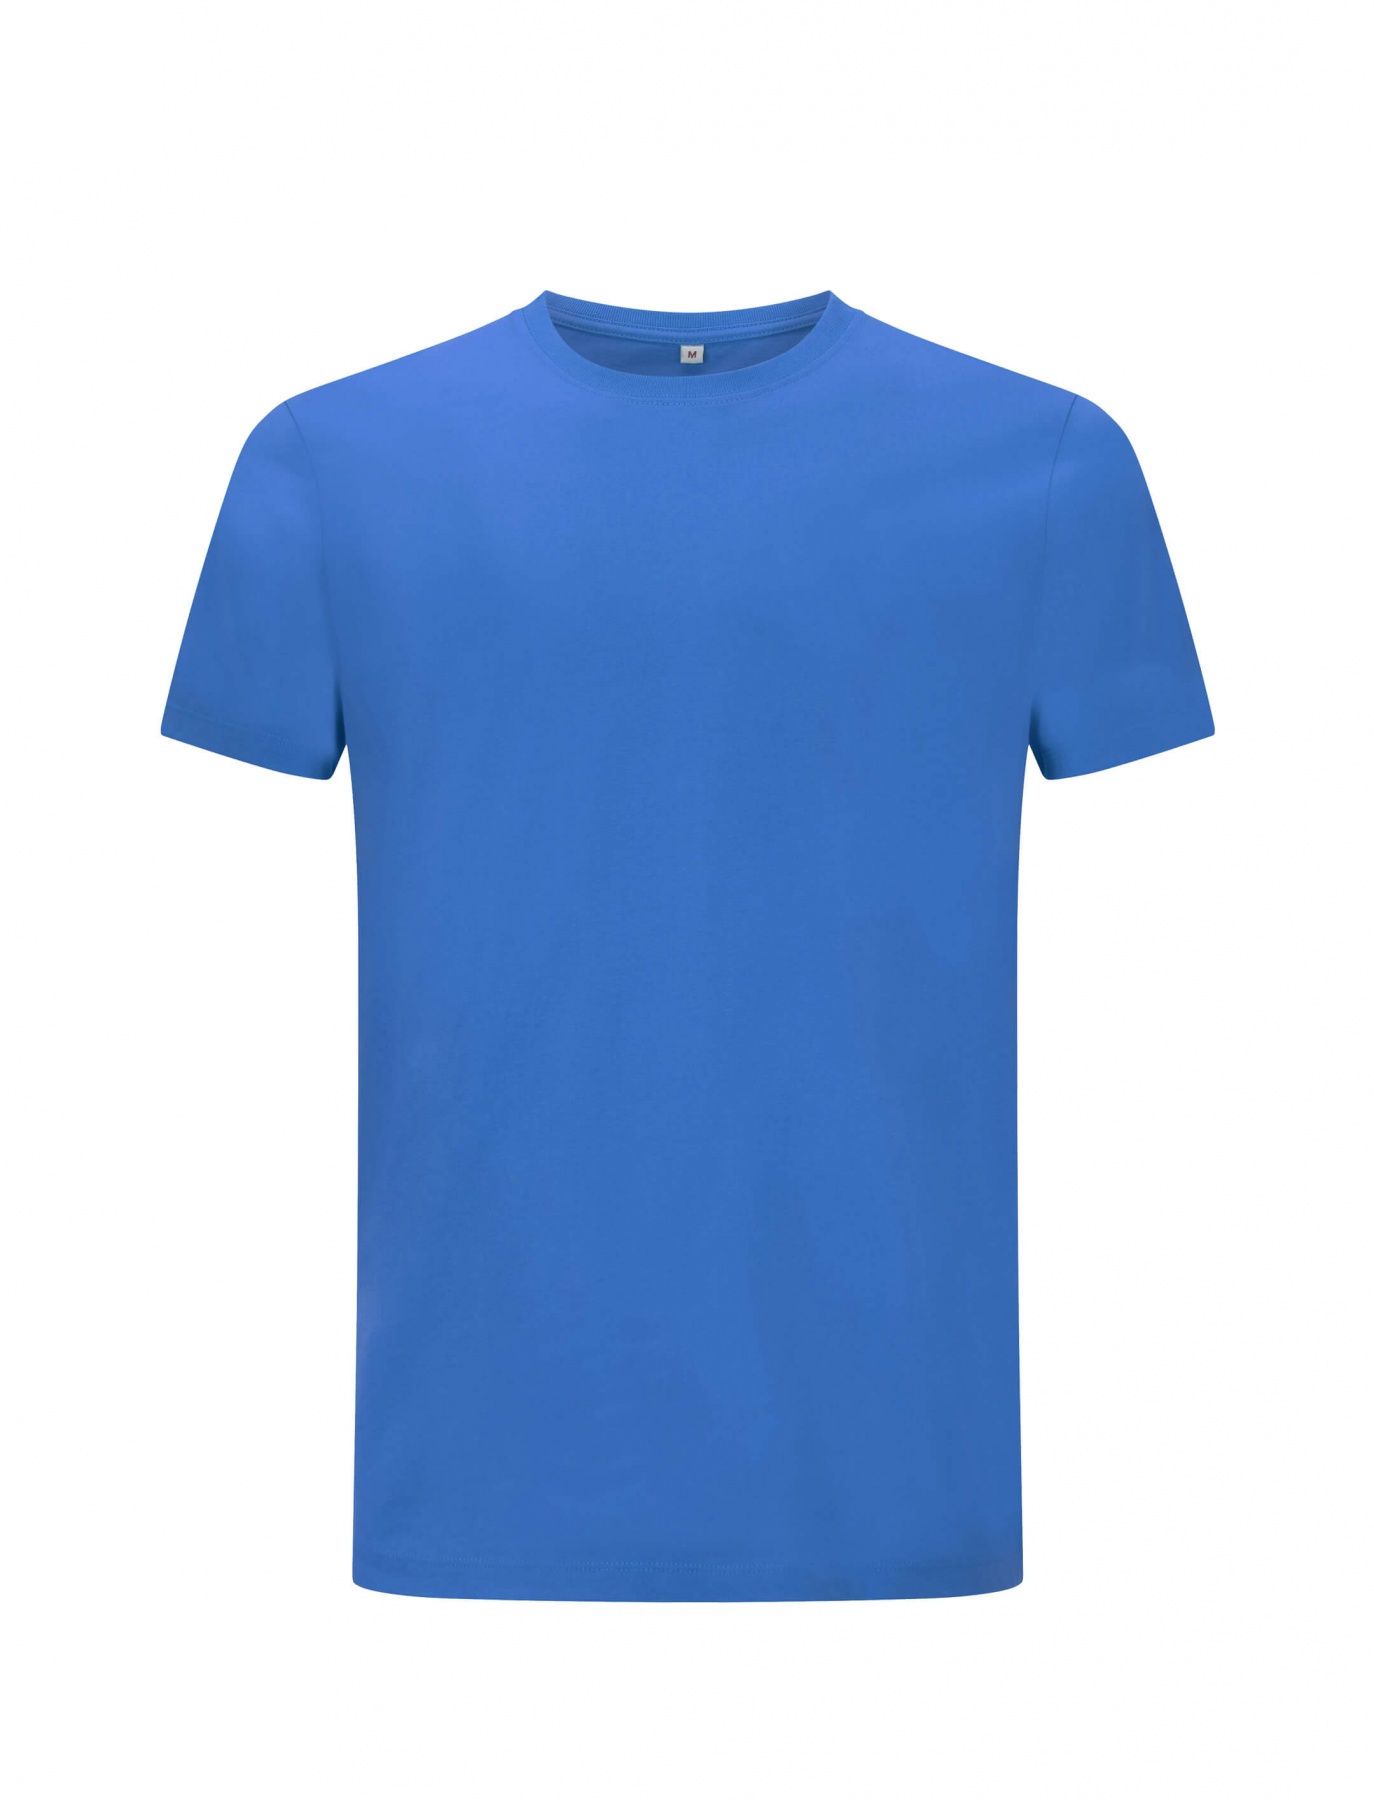 Niebieski ekologiczny t-shirt unisex z własnym nadrukiem firmowym Continental Jersey t-shirt EP18